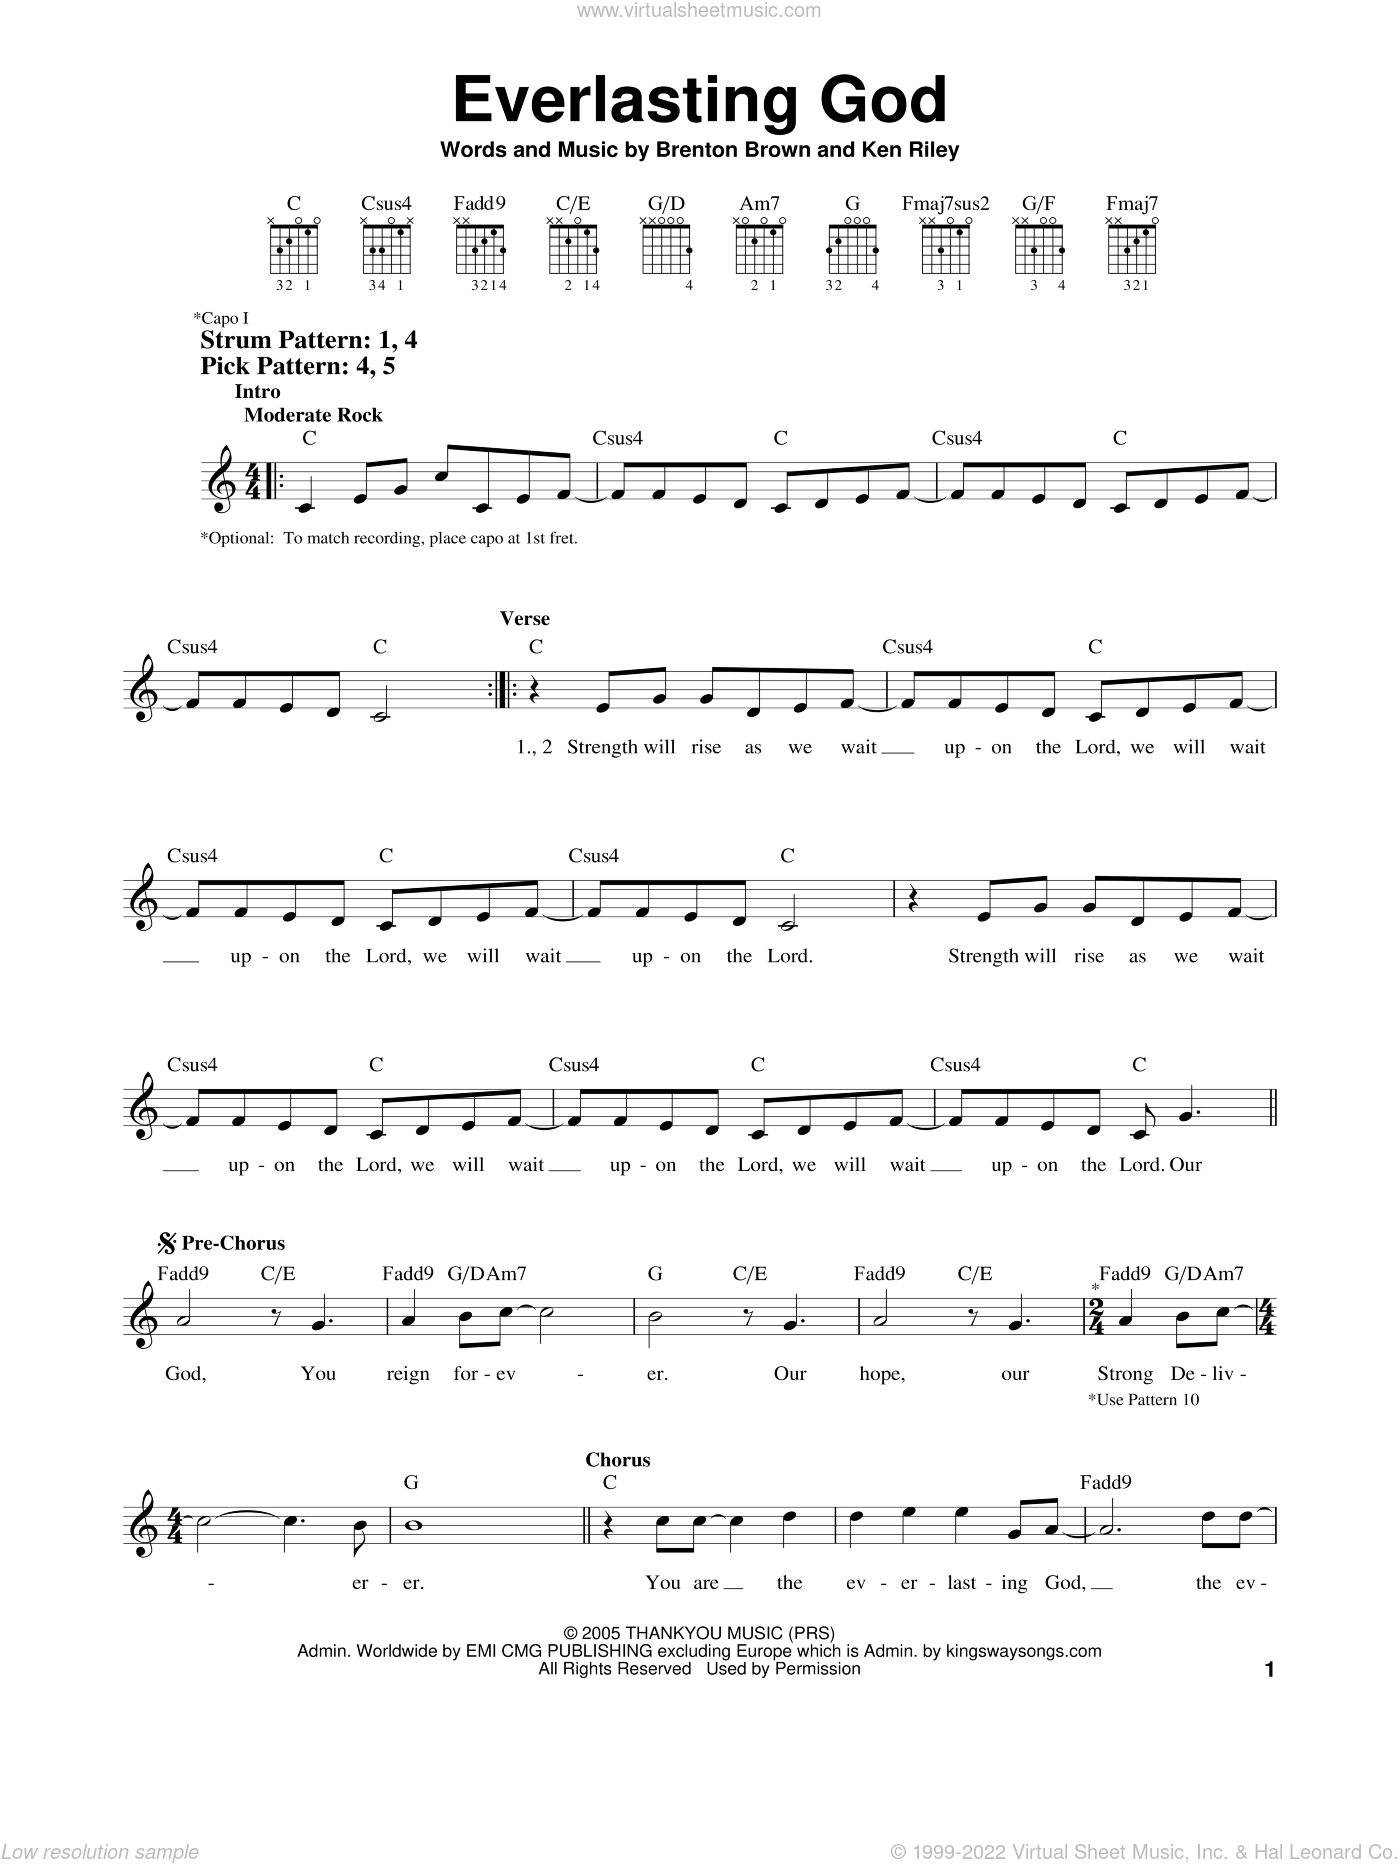 Tomlin - Everlasting God sheet music for guitar solo (chords) v2